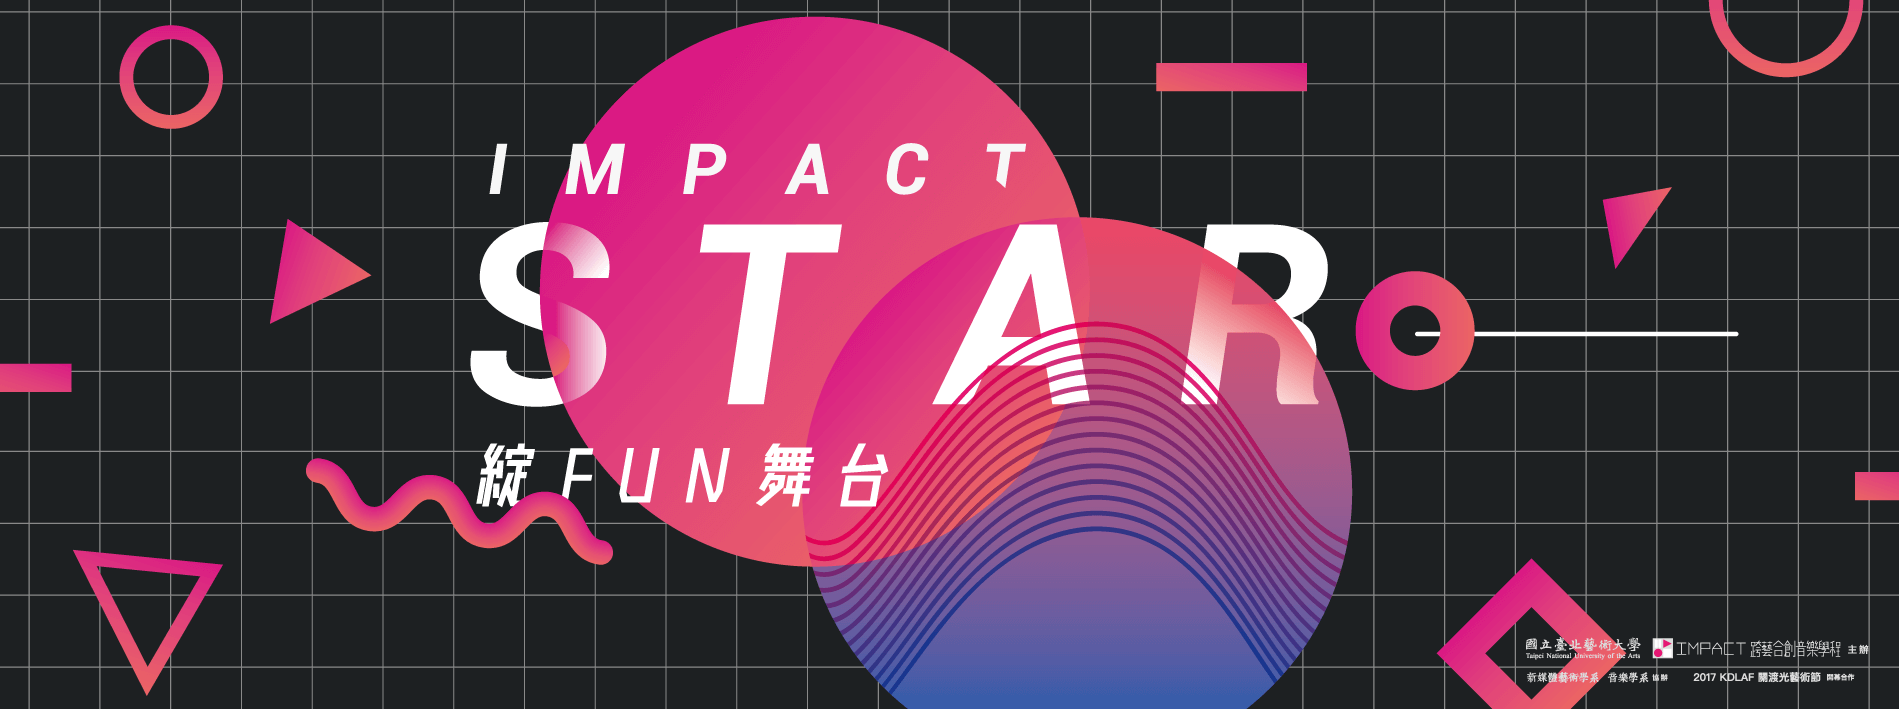 北藝大IMPACT STAR - 綻FUN舞台 主視覺